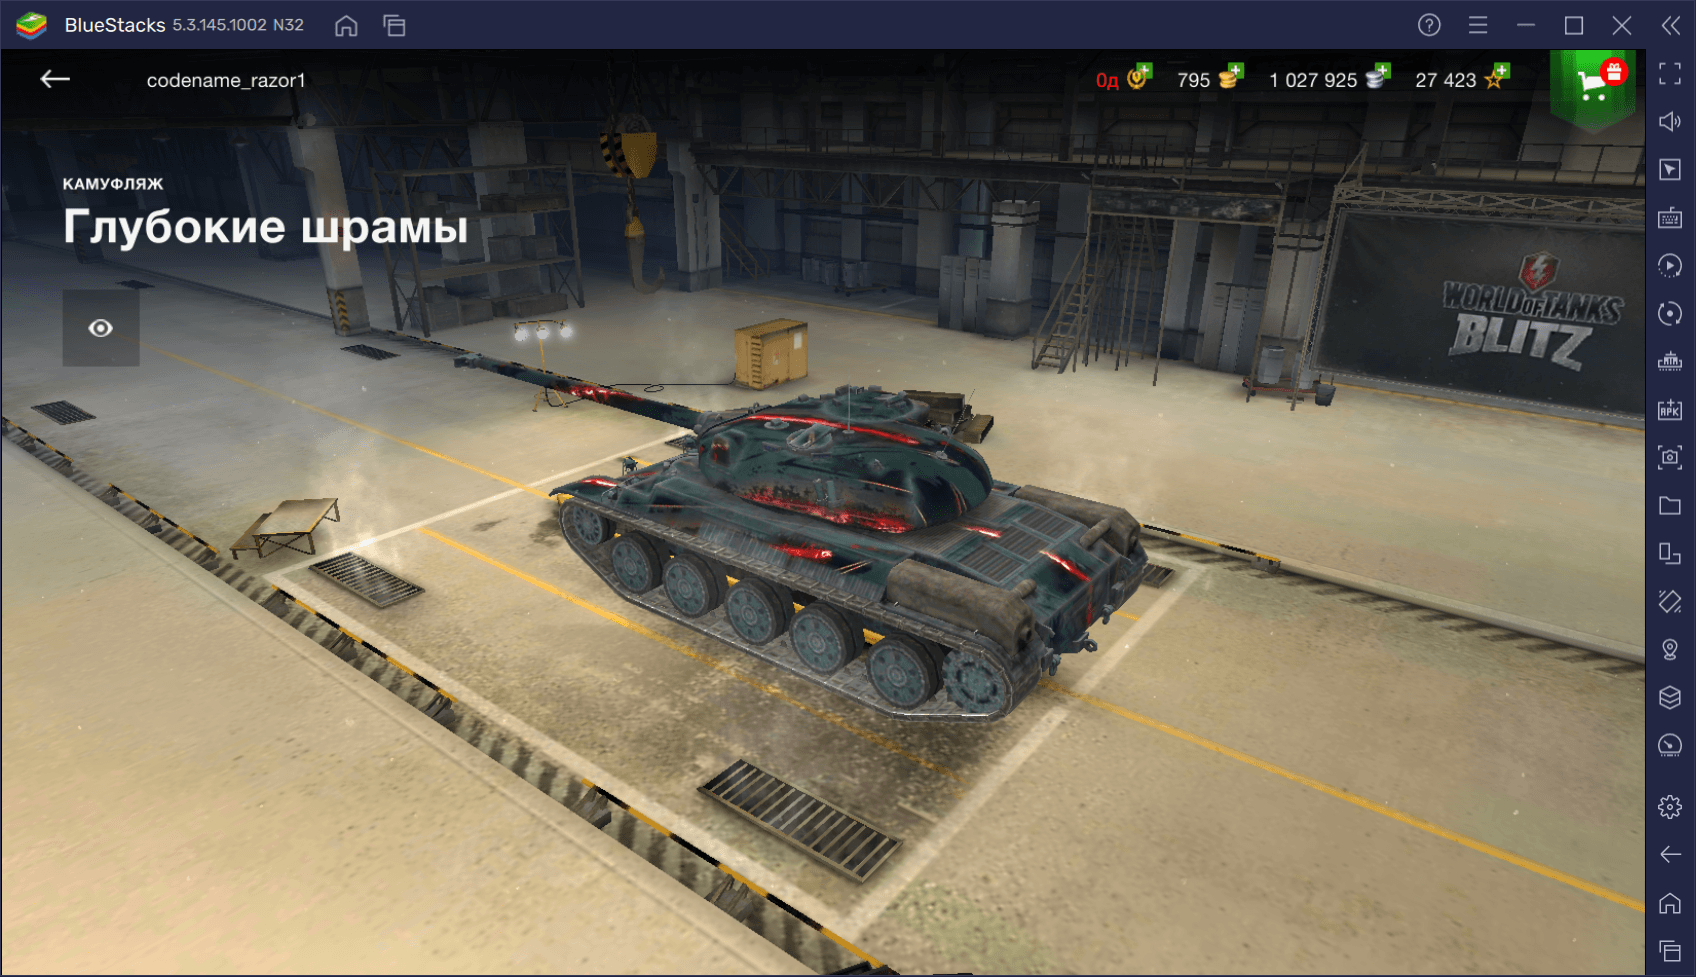 Гайд по коллекционному танку AMX 30 в World of Tanks Blitz. Характеристики, сильные стороны и тактики игры